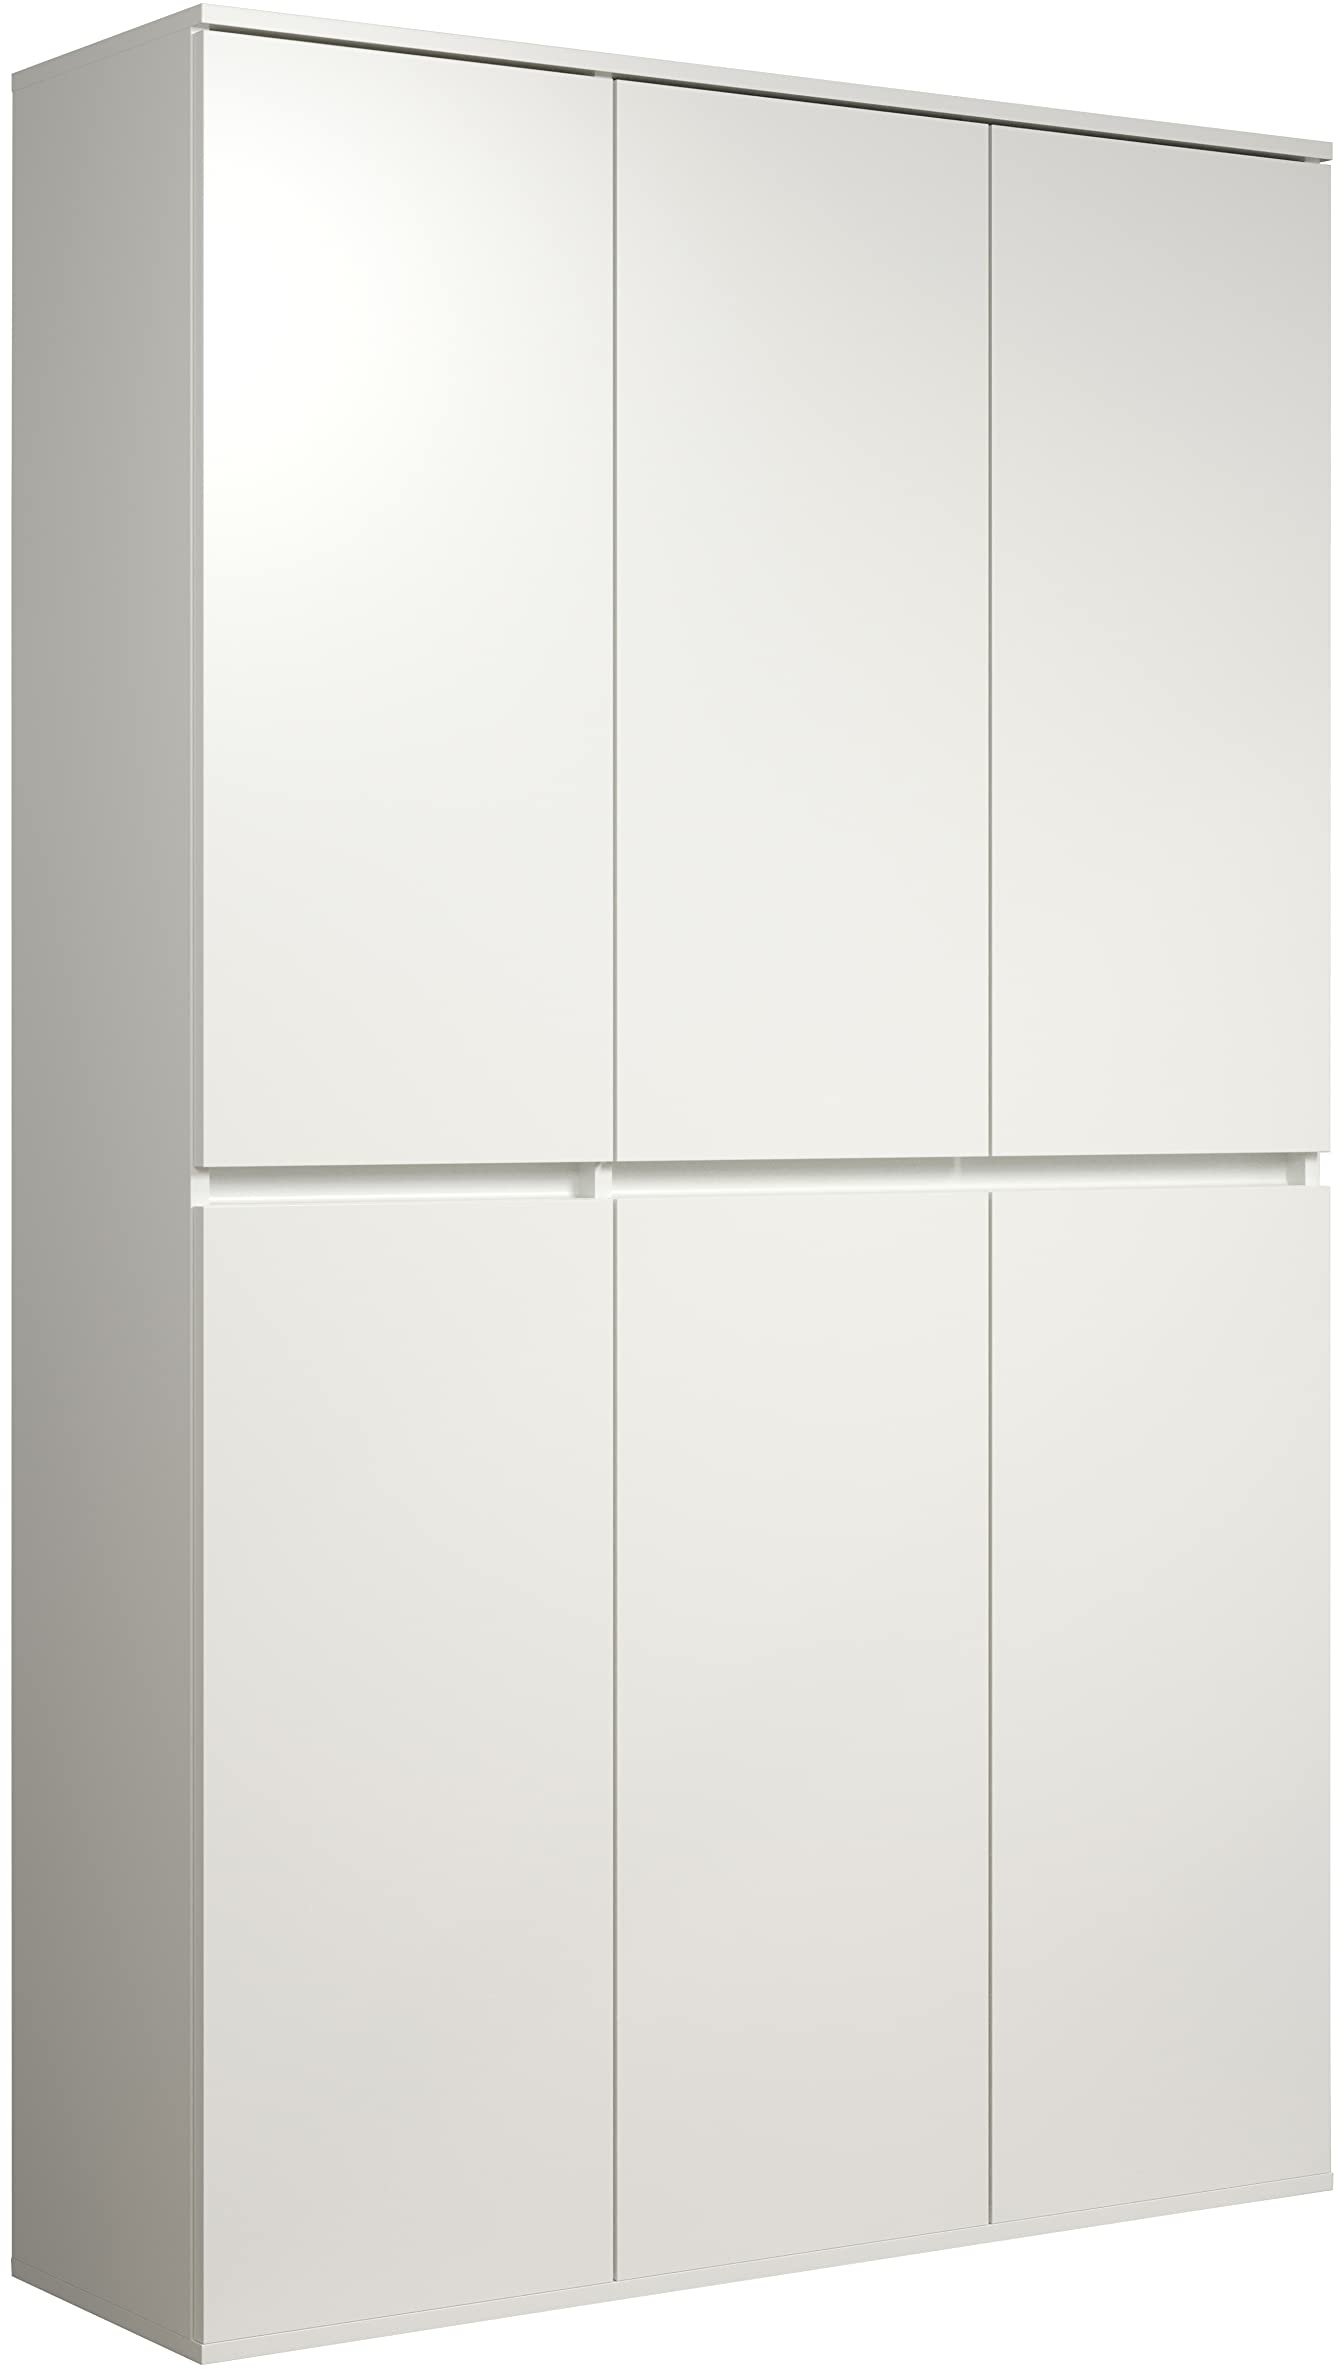 trendteam smart living - Multifunktionsschrank Mehrzweckschrank - Garderobe - Nevada - Aufbaumaß (BxHxT) 111 x 191 x 34 cm - Farbe Weiß - 213215701